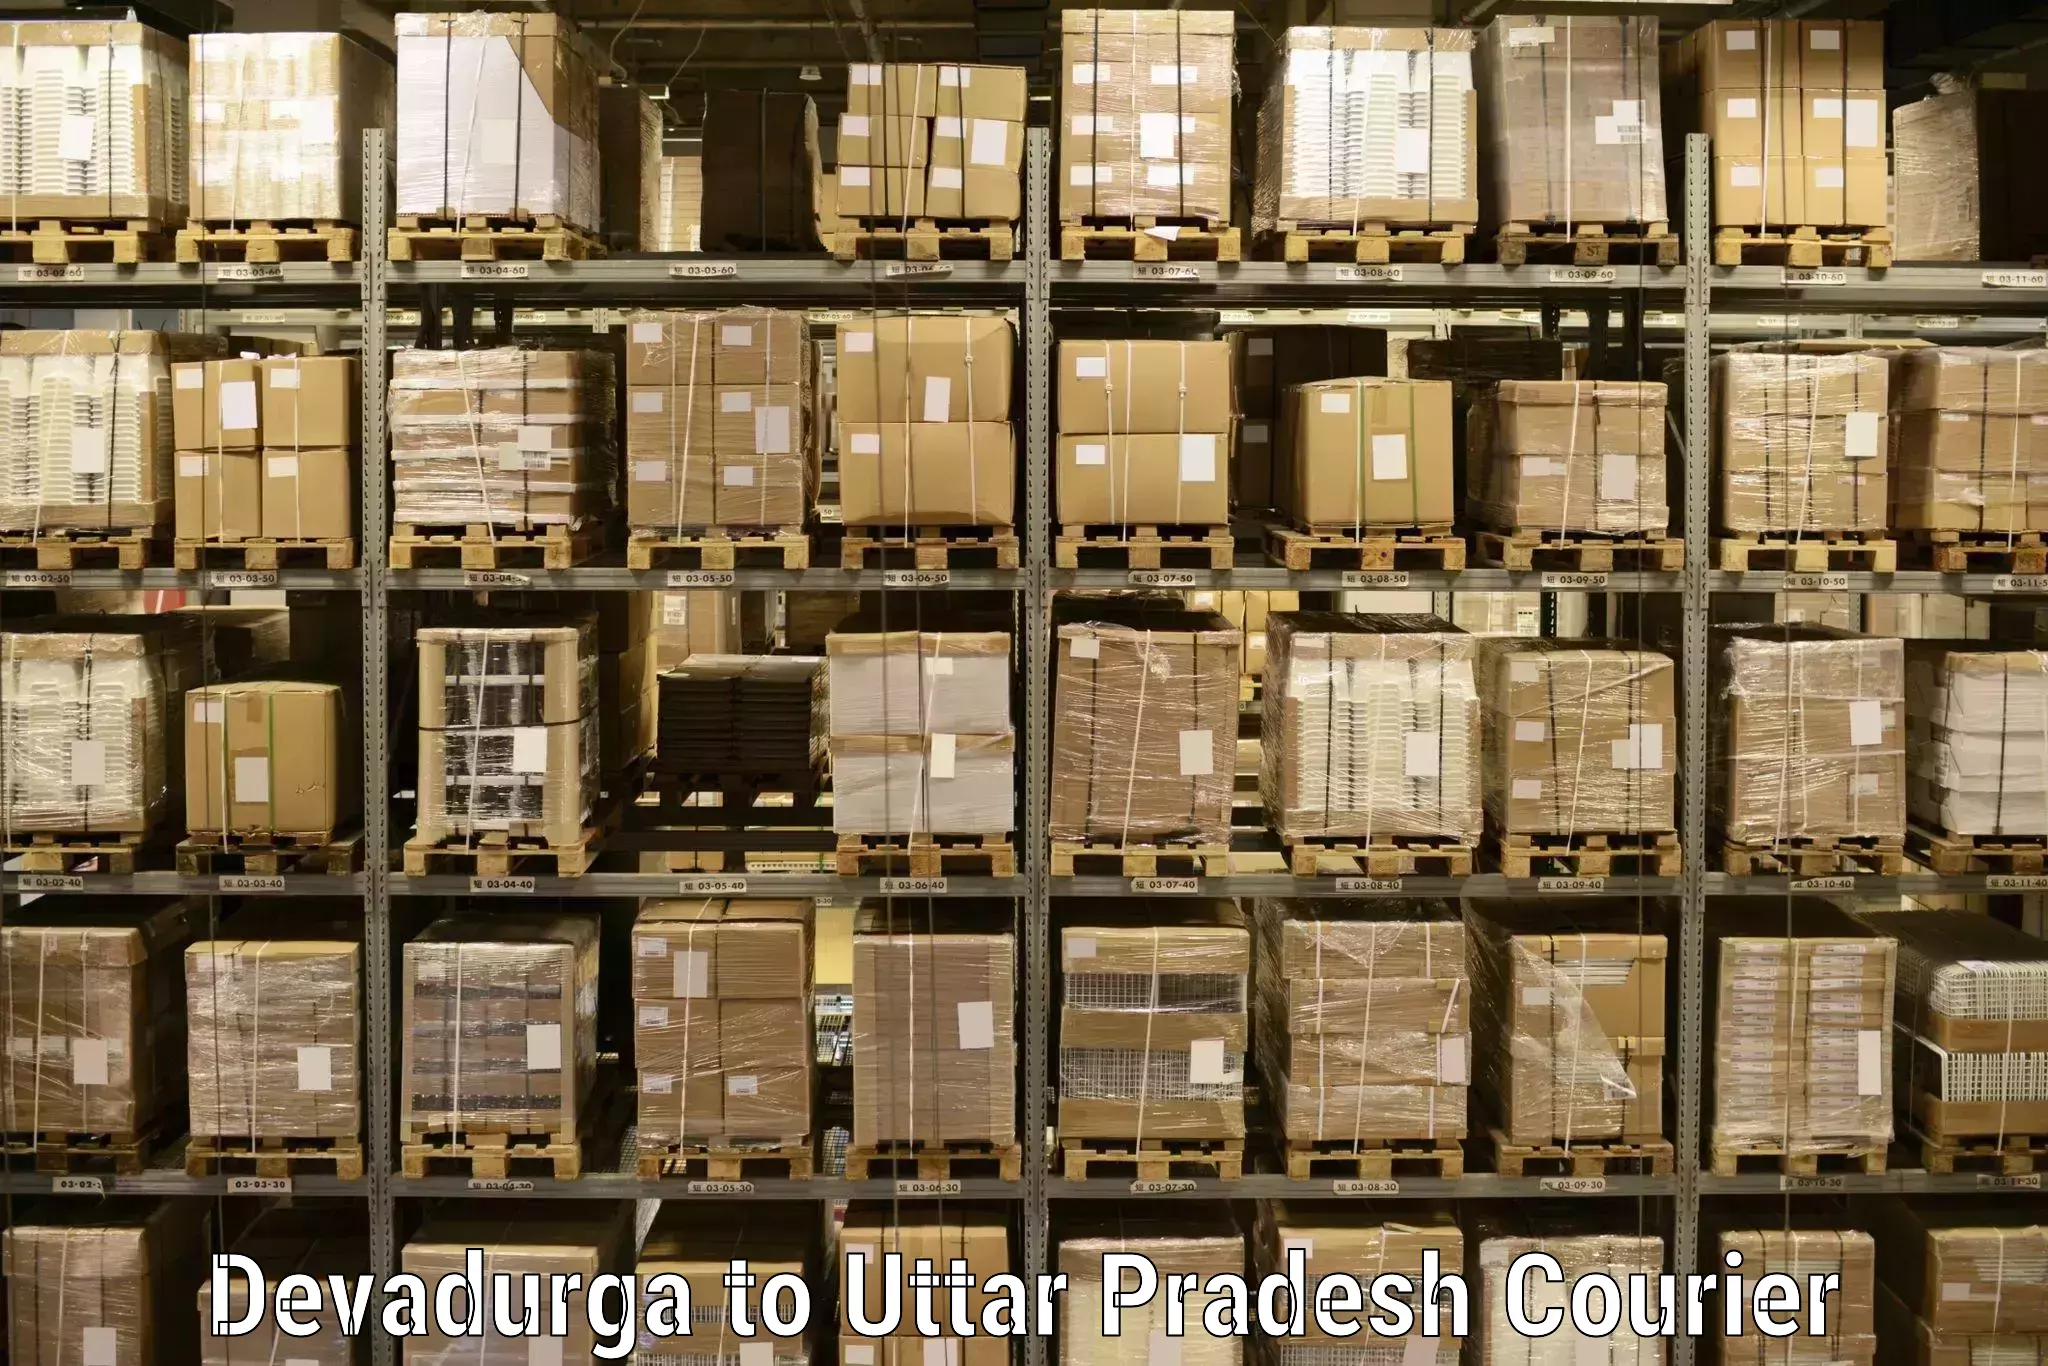 Customizable shipping options in Devadurga to Jhansi